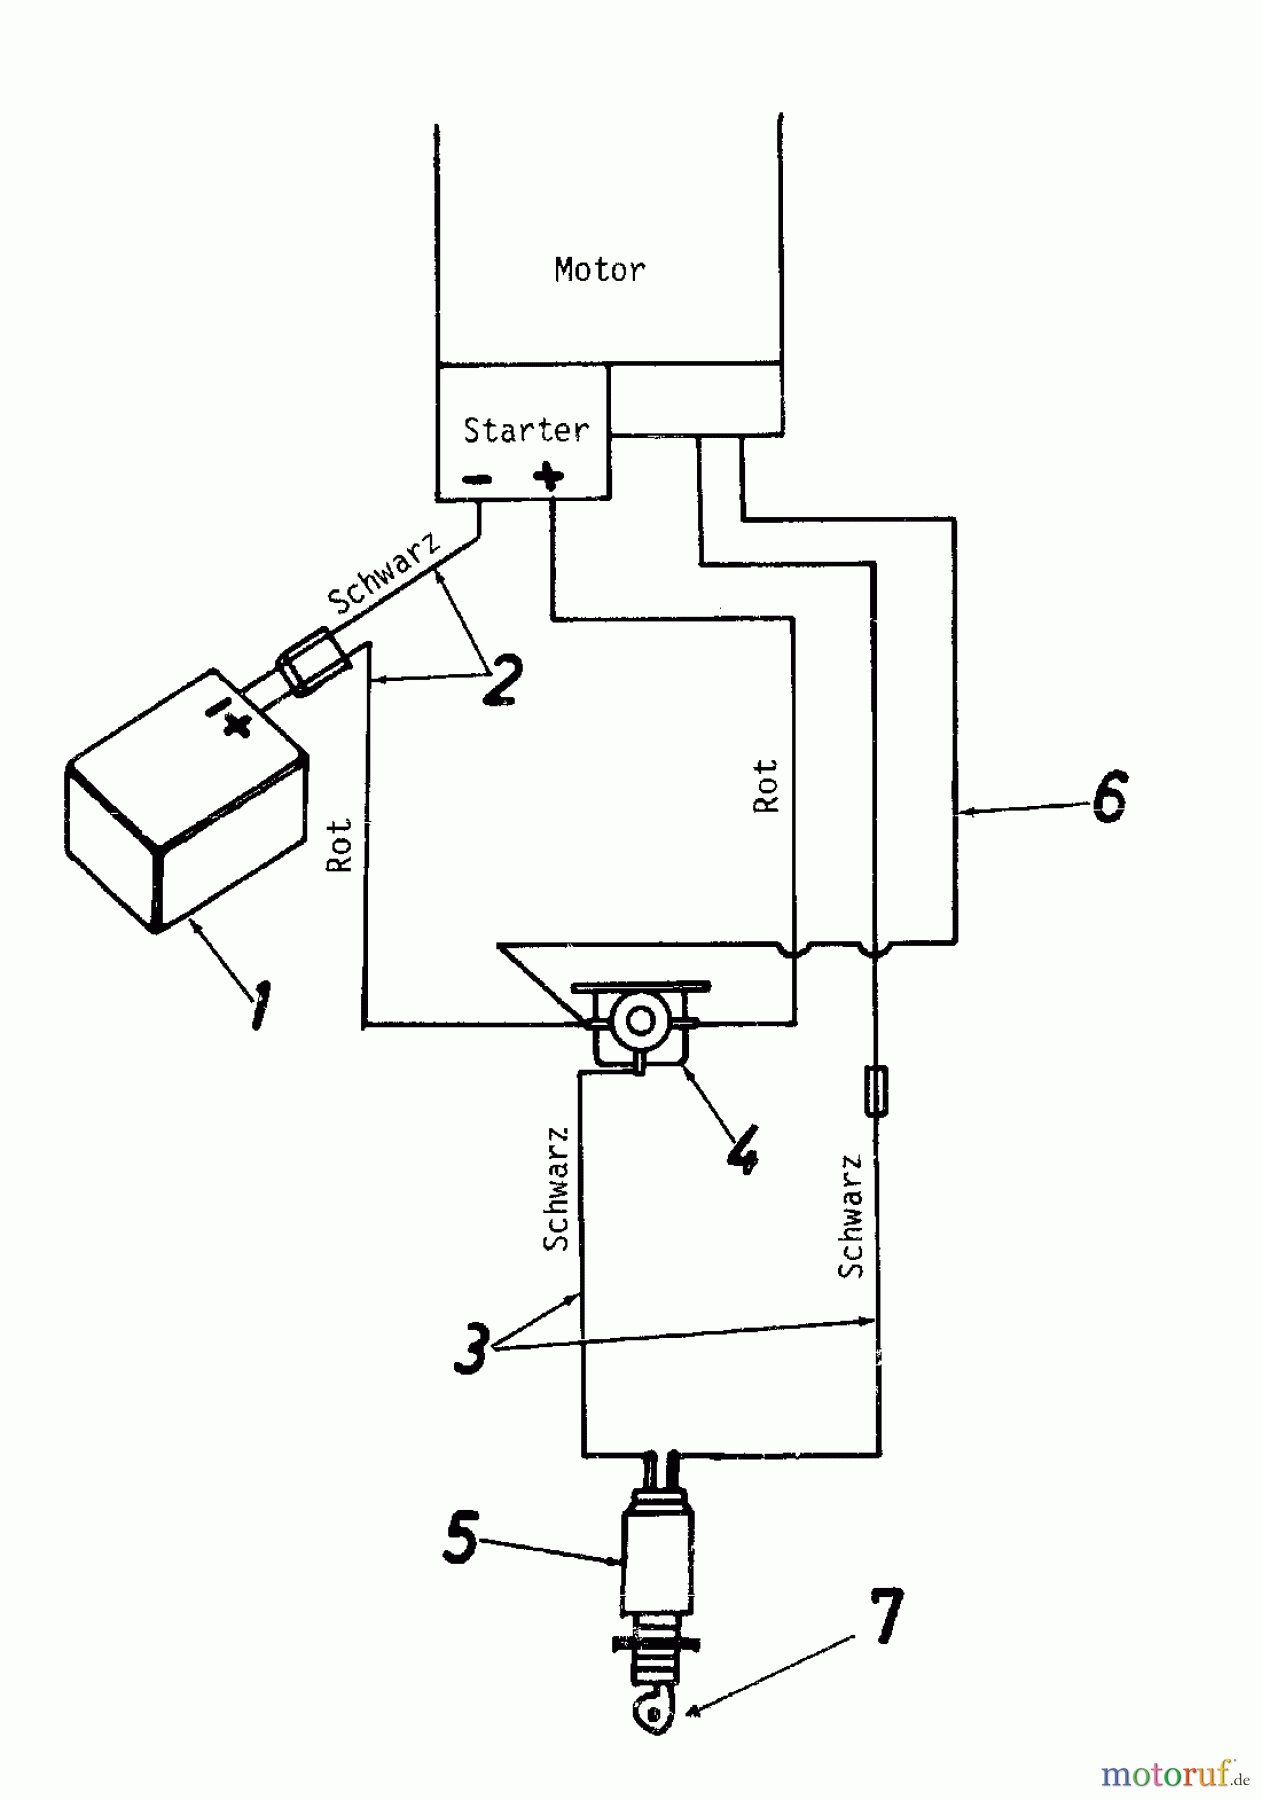  MTD Petrol mower self propelled REX-SUPER 56 ESSL 125-3770  (1985) Wiring diagram